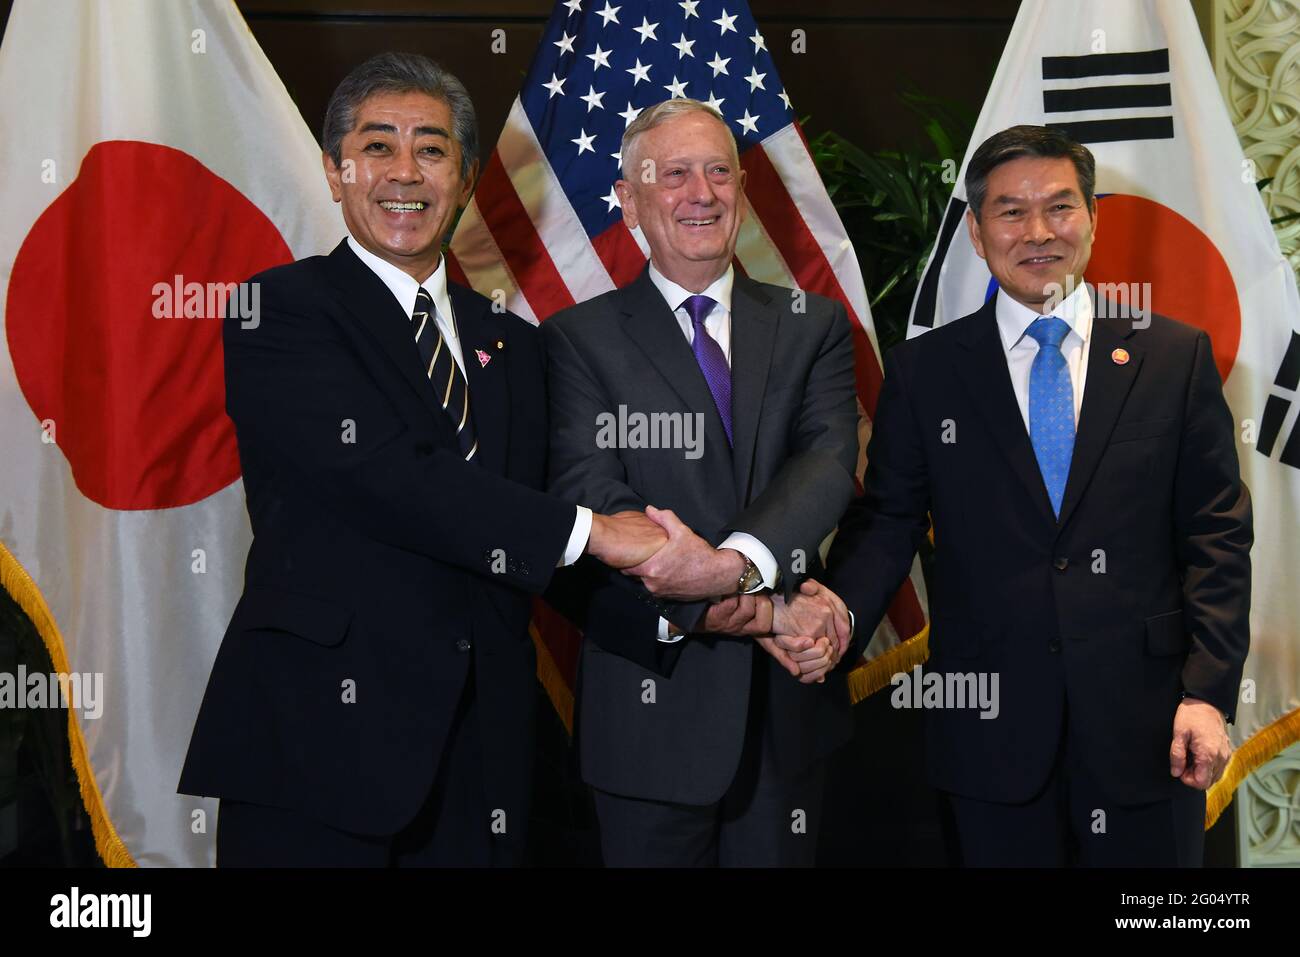 Il Segretario della Difesa statunitense James N. Mattis incontra il Ministro della Difesa giapponese Takeshi Iwaya (sinistra) e il Ministro della Difesa nazionale sudcoreano Jeong Kyeong-doo (destra) alla riunione dei Ministri della Difesa ASEAN, Singapore, 19 ottobre 2018. Foto Stock